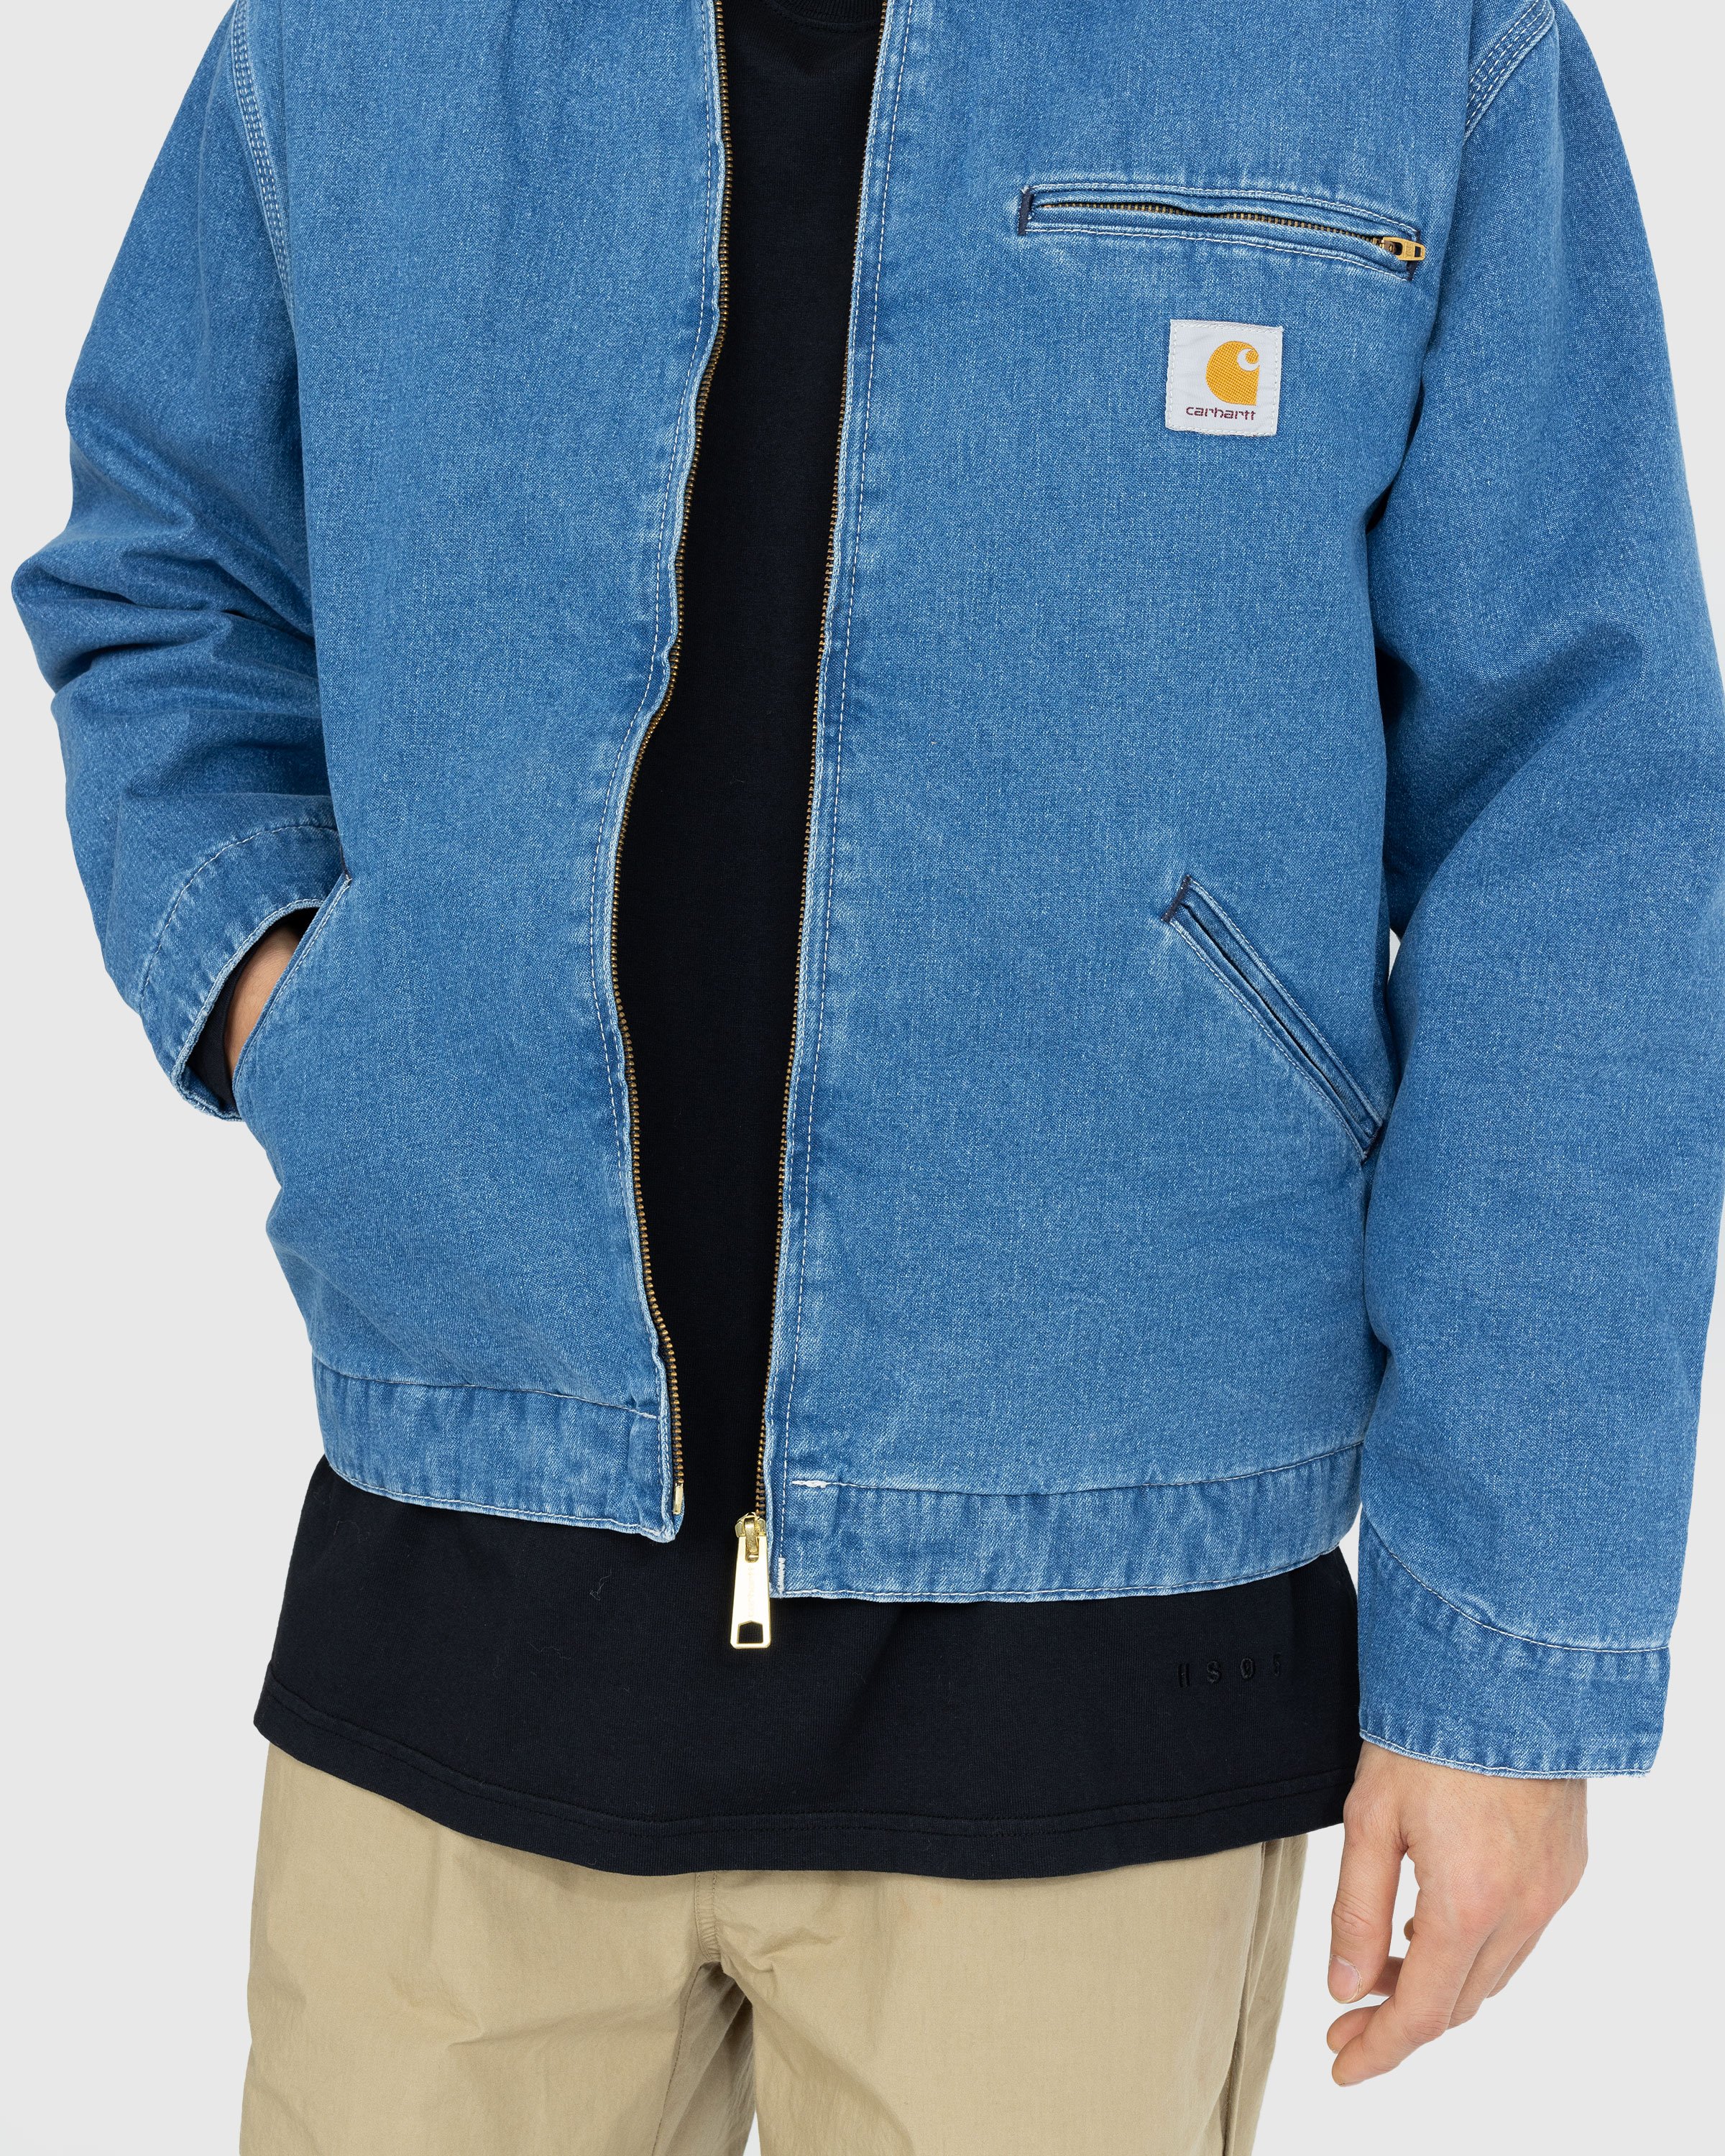 Carhartt WIP - OG Detroit Jacket Blue/Stone Washed - Clothing - Blue - Image 7